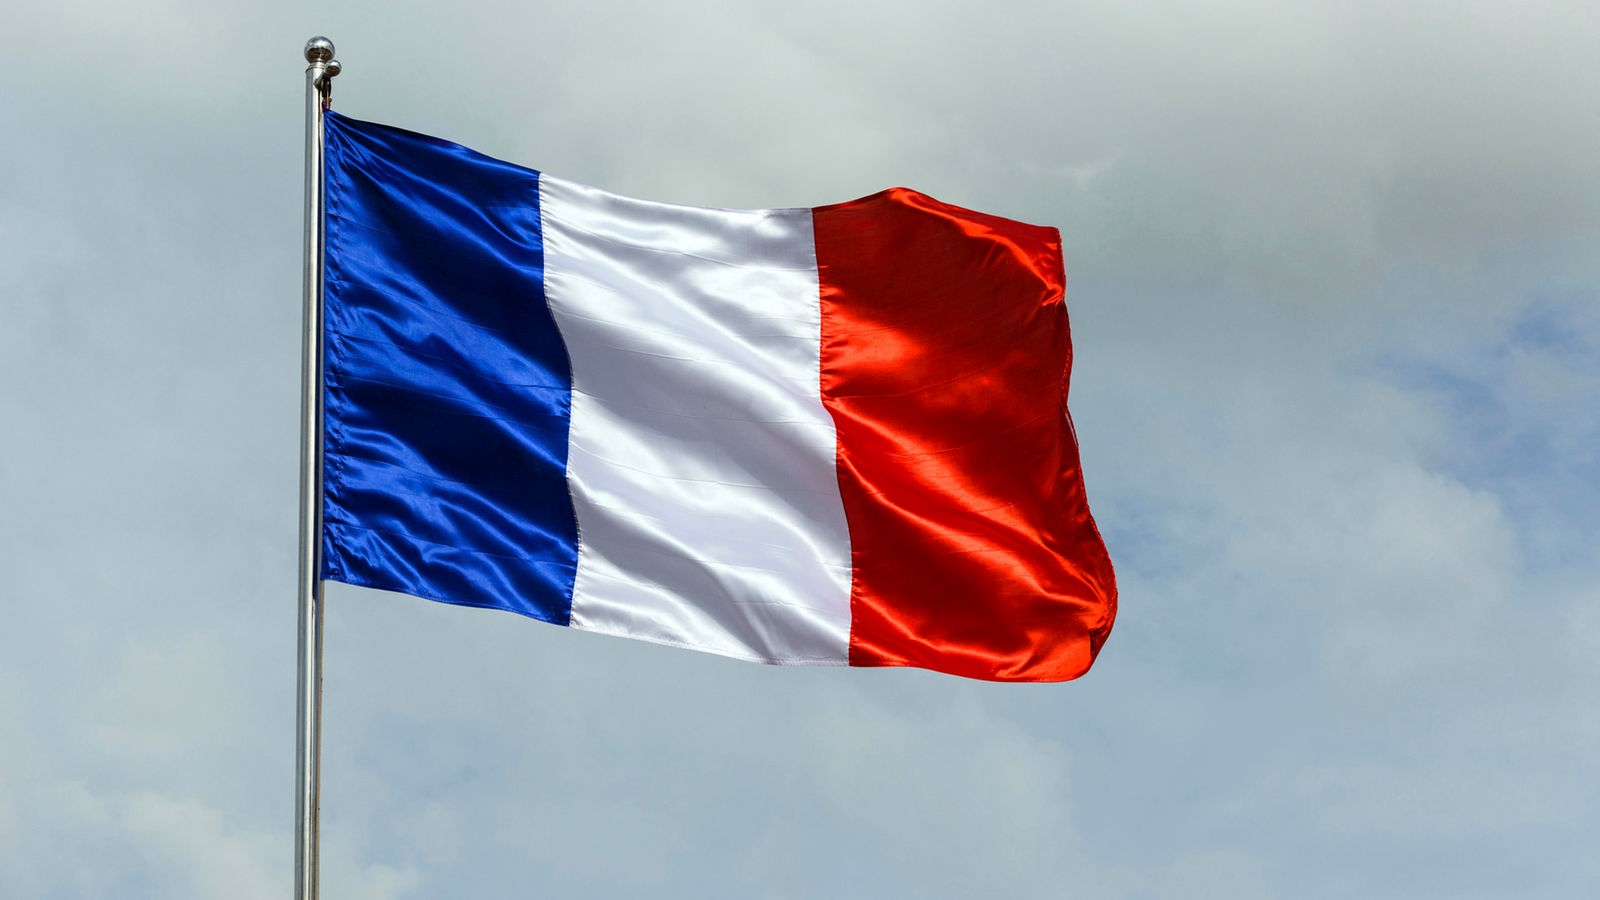 France : le camp de Macron manque la majorité absolue aux élections législatives – Actualités